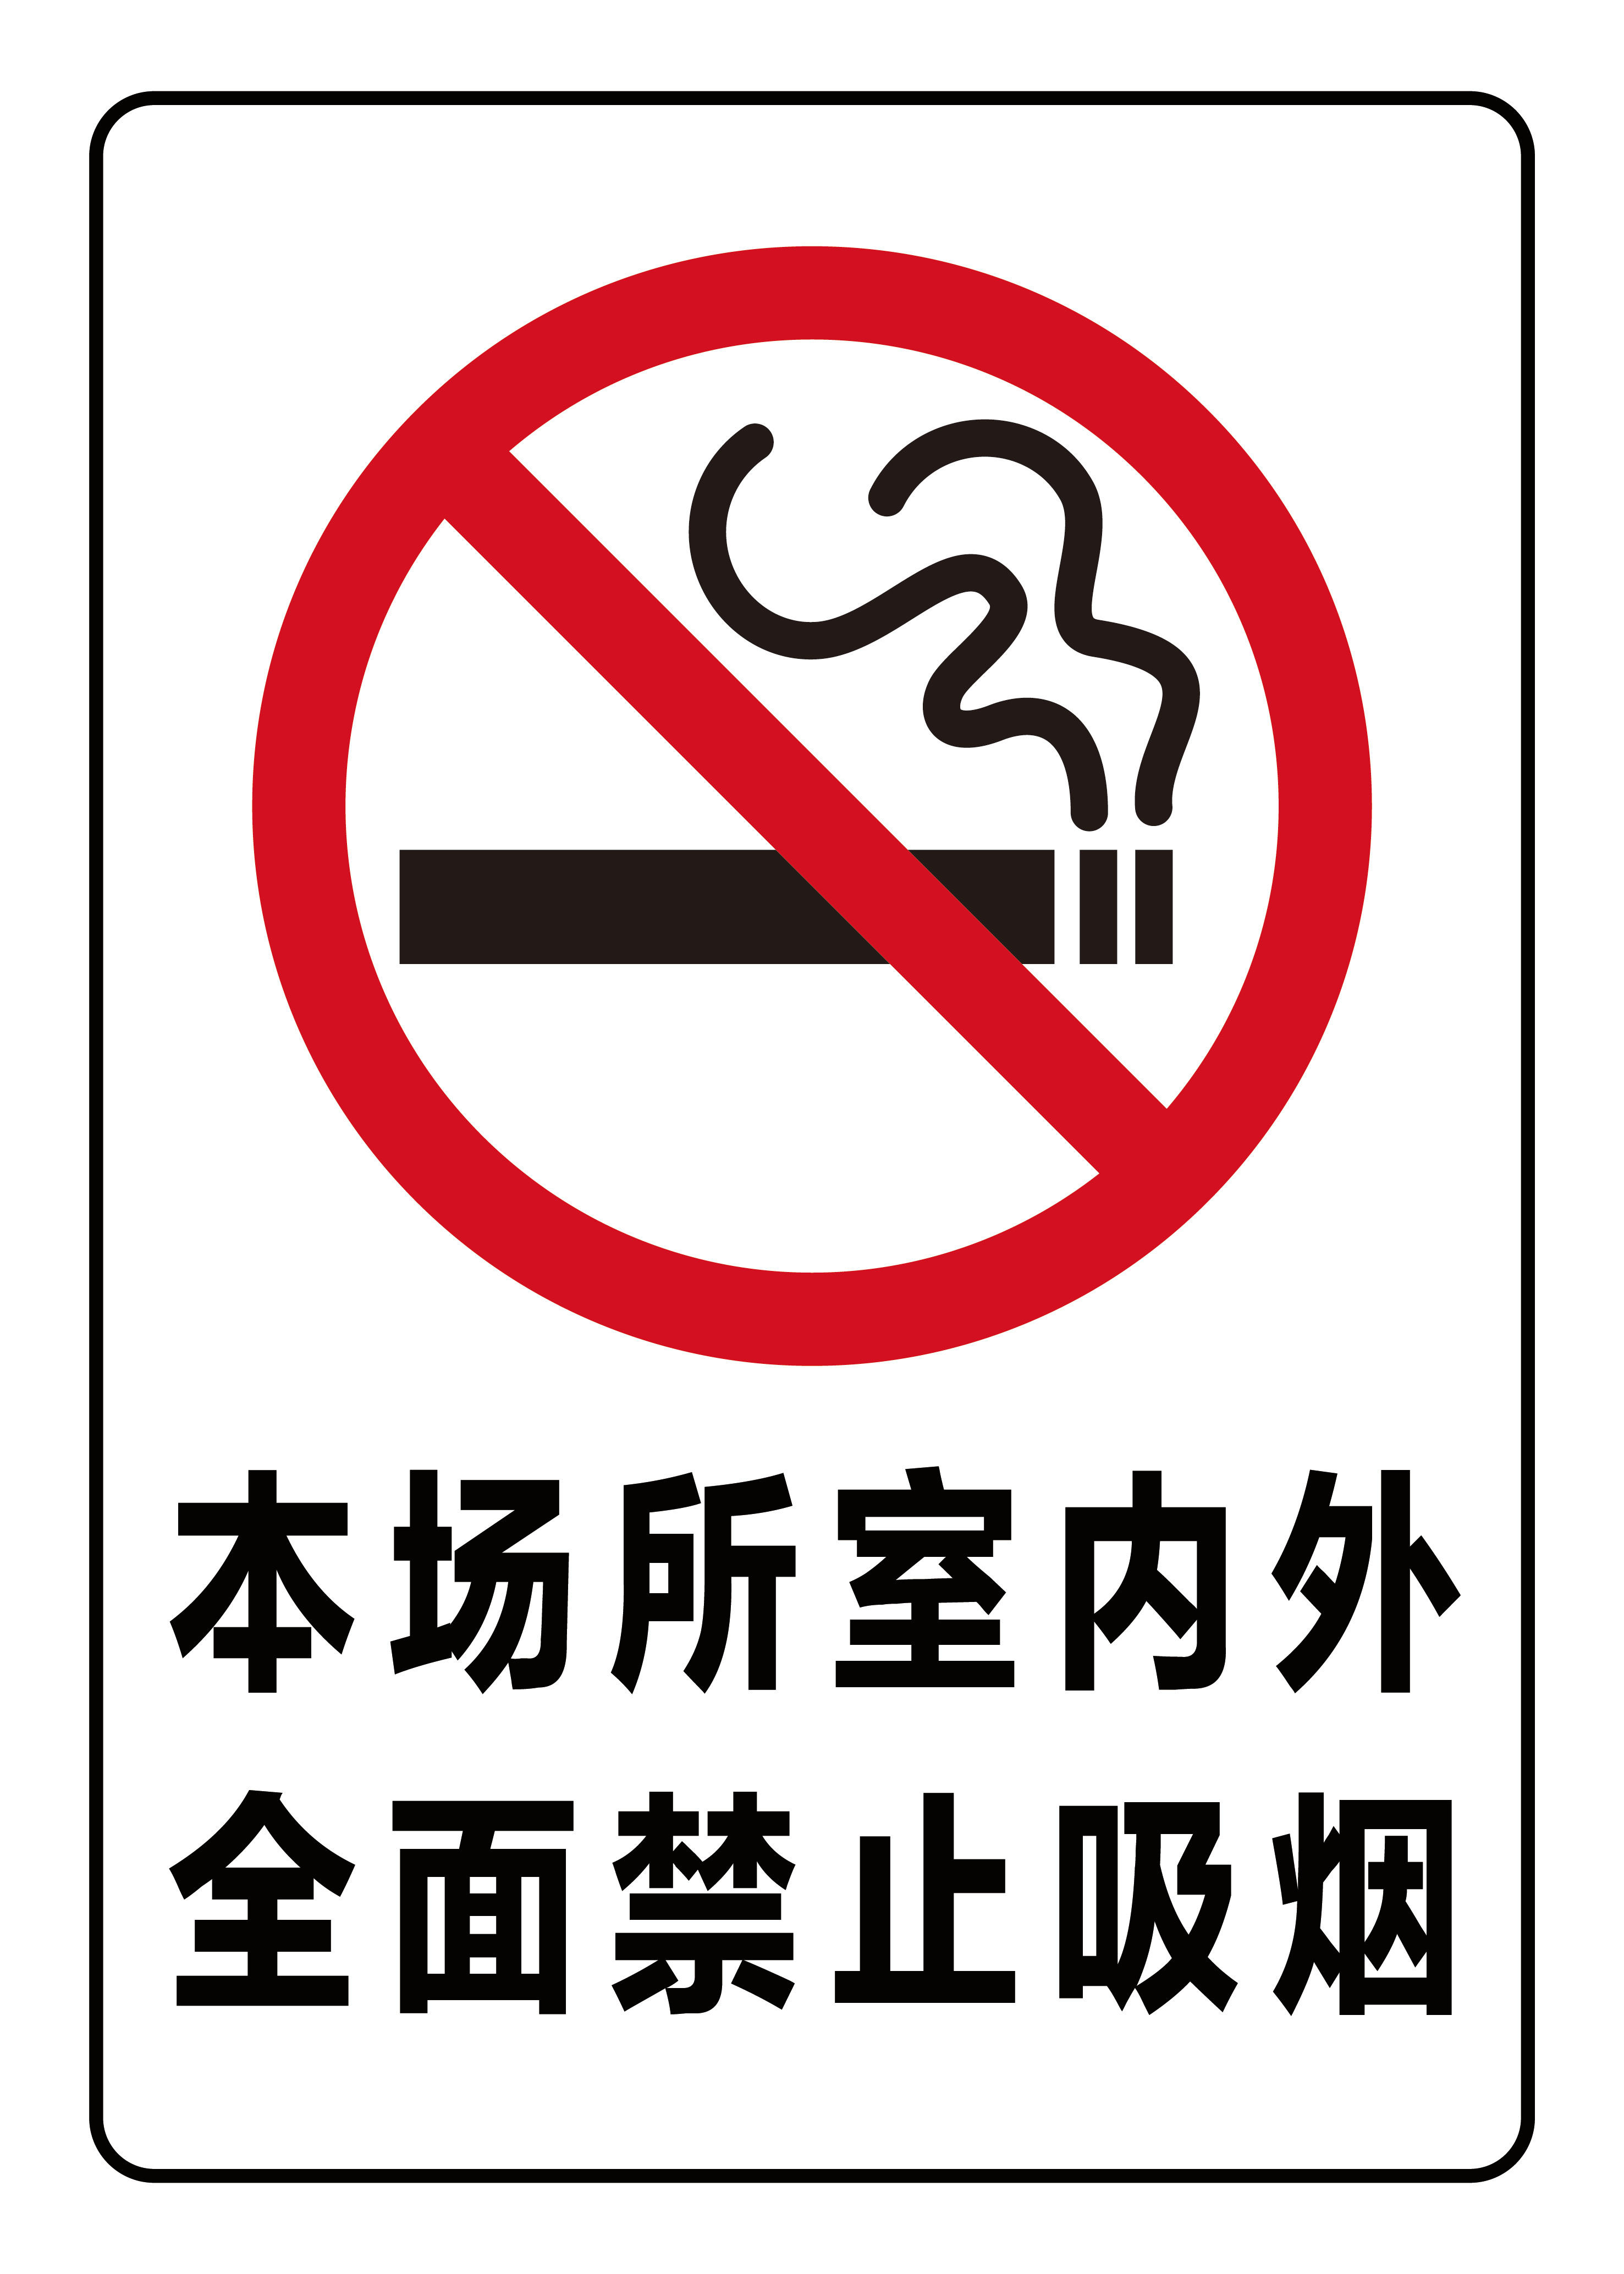 新港街道新尚里社区开展禁烟宣传活动